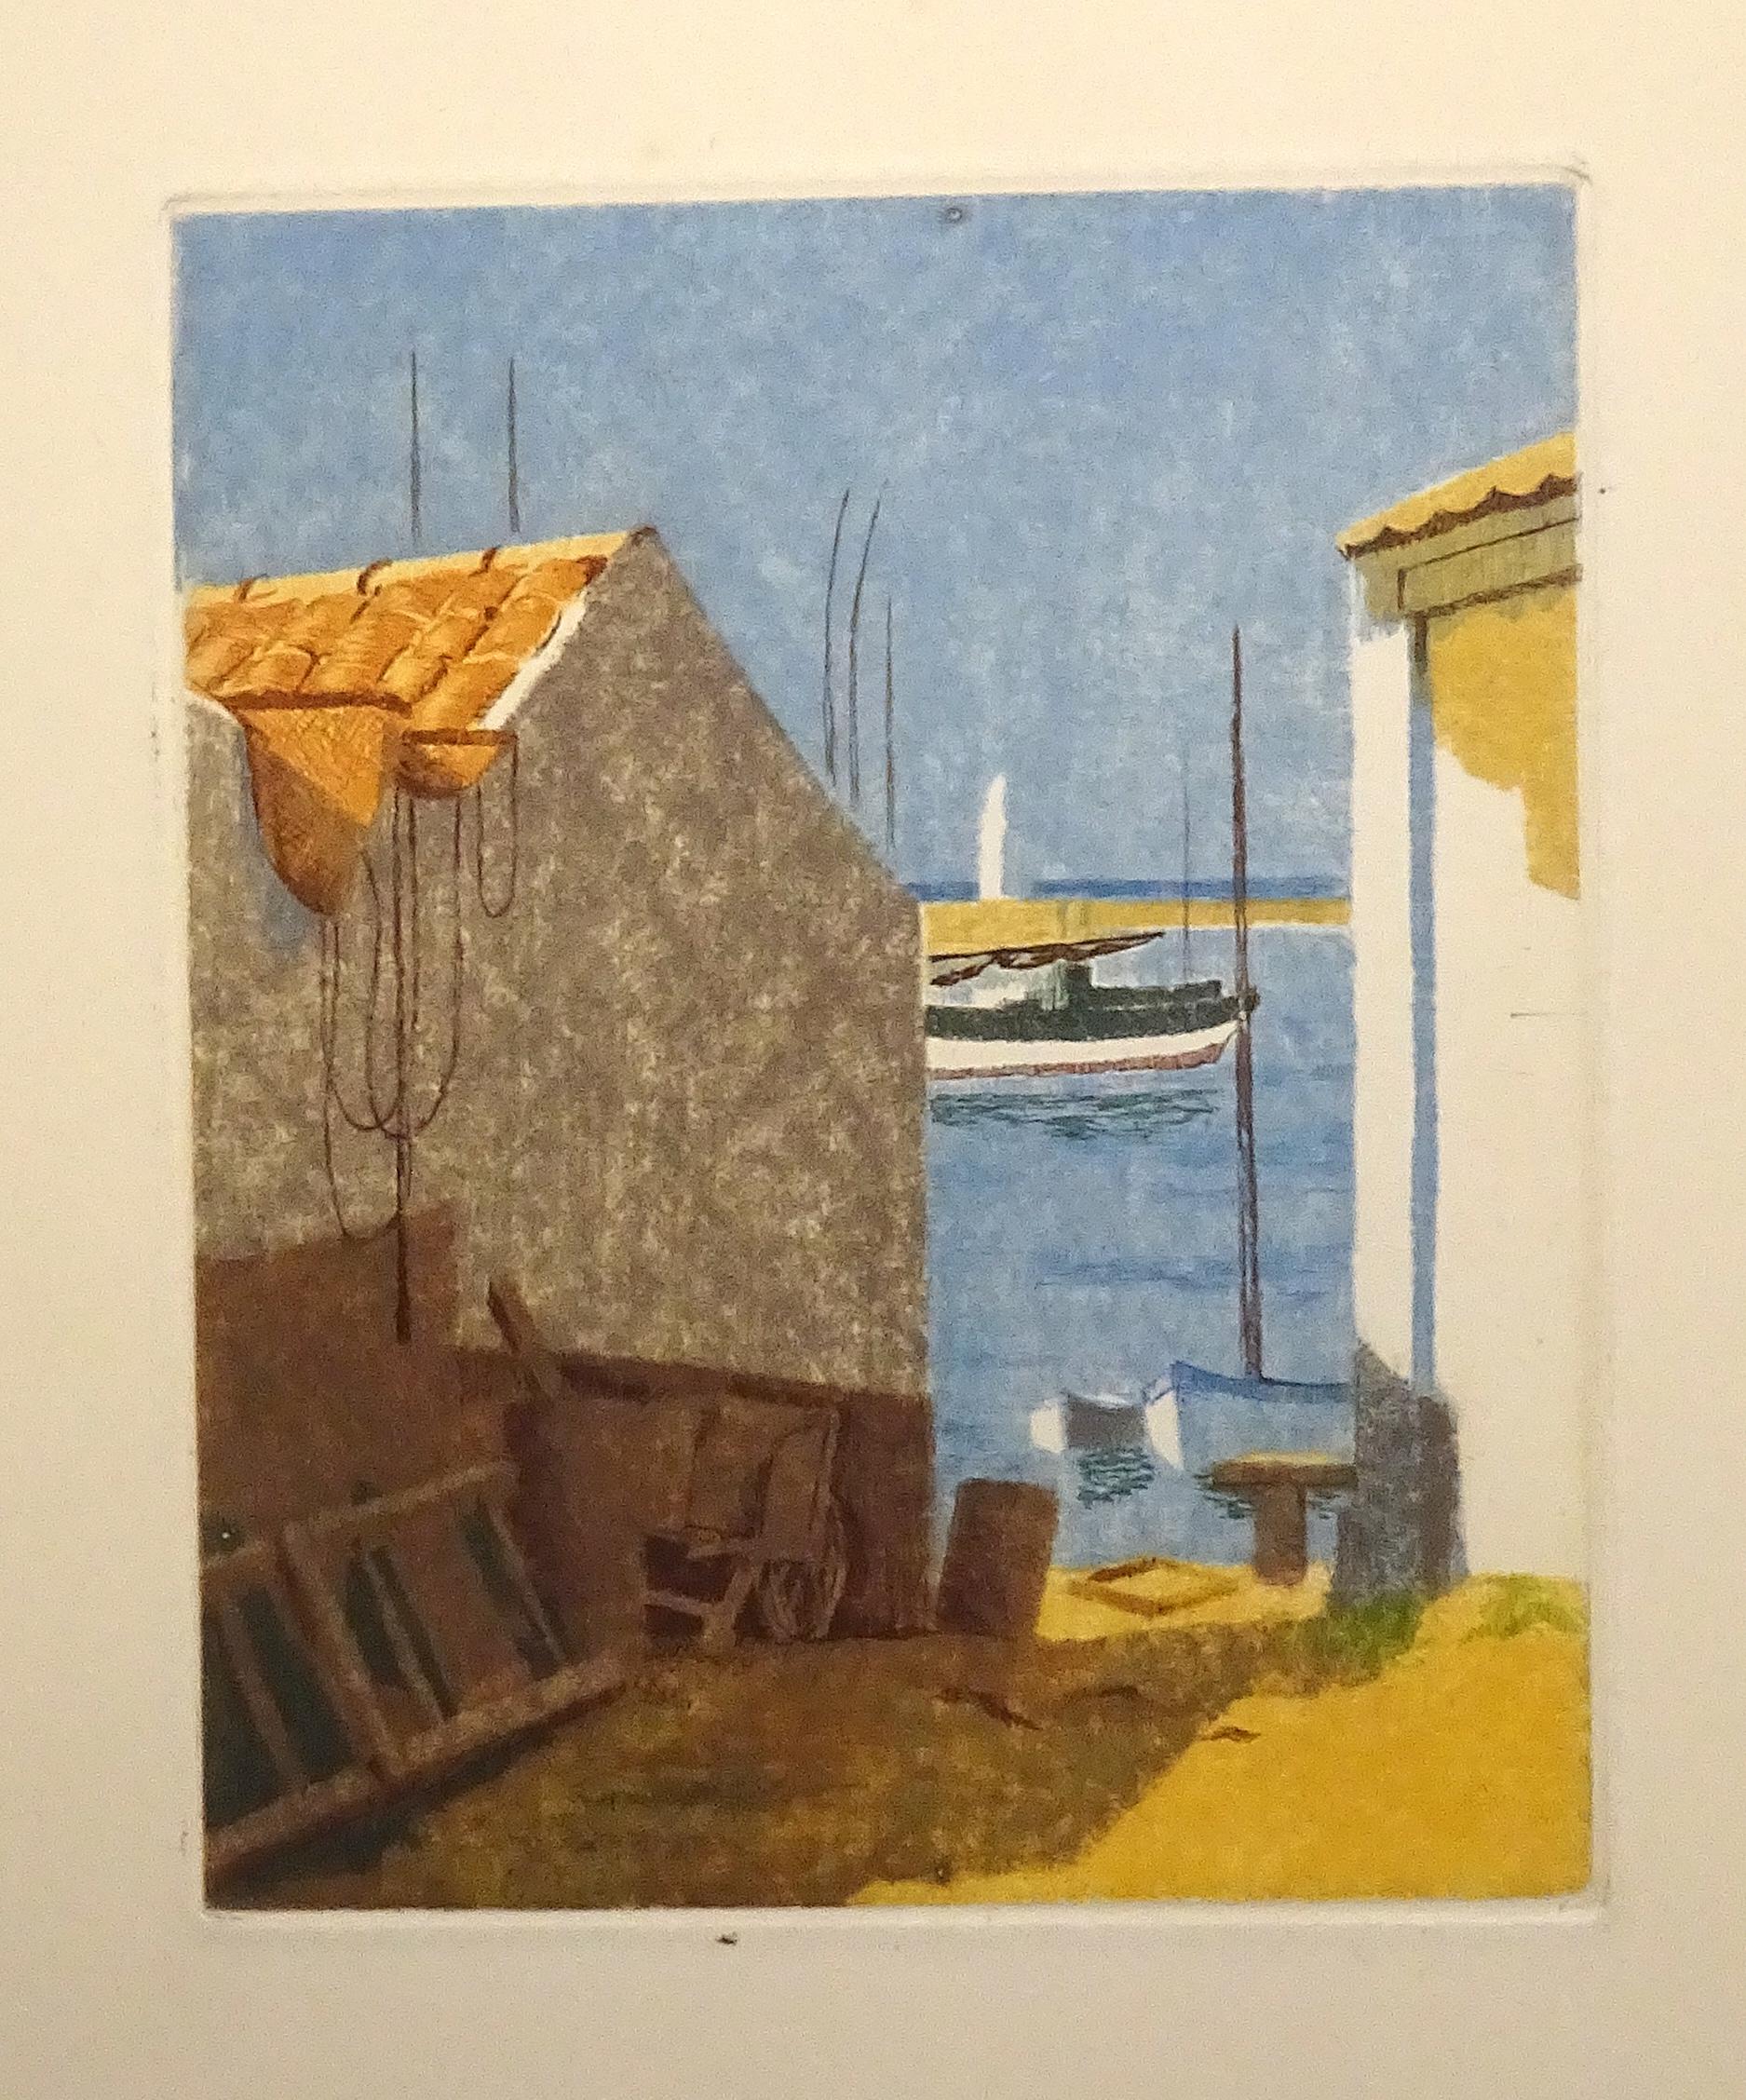 Eugene Corneau Landscape Print - Marine - Original Etching by E. Corneau - 1930s